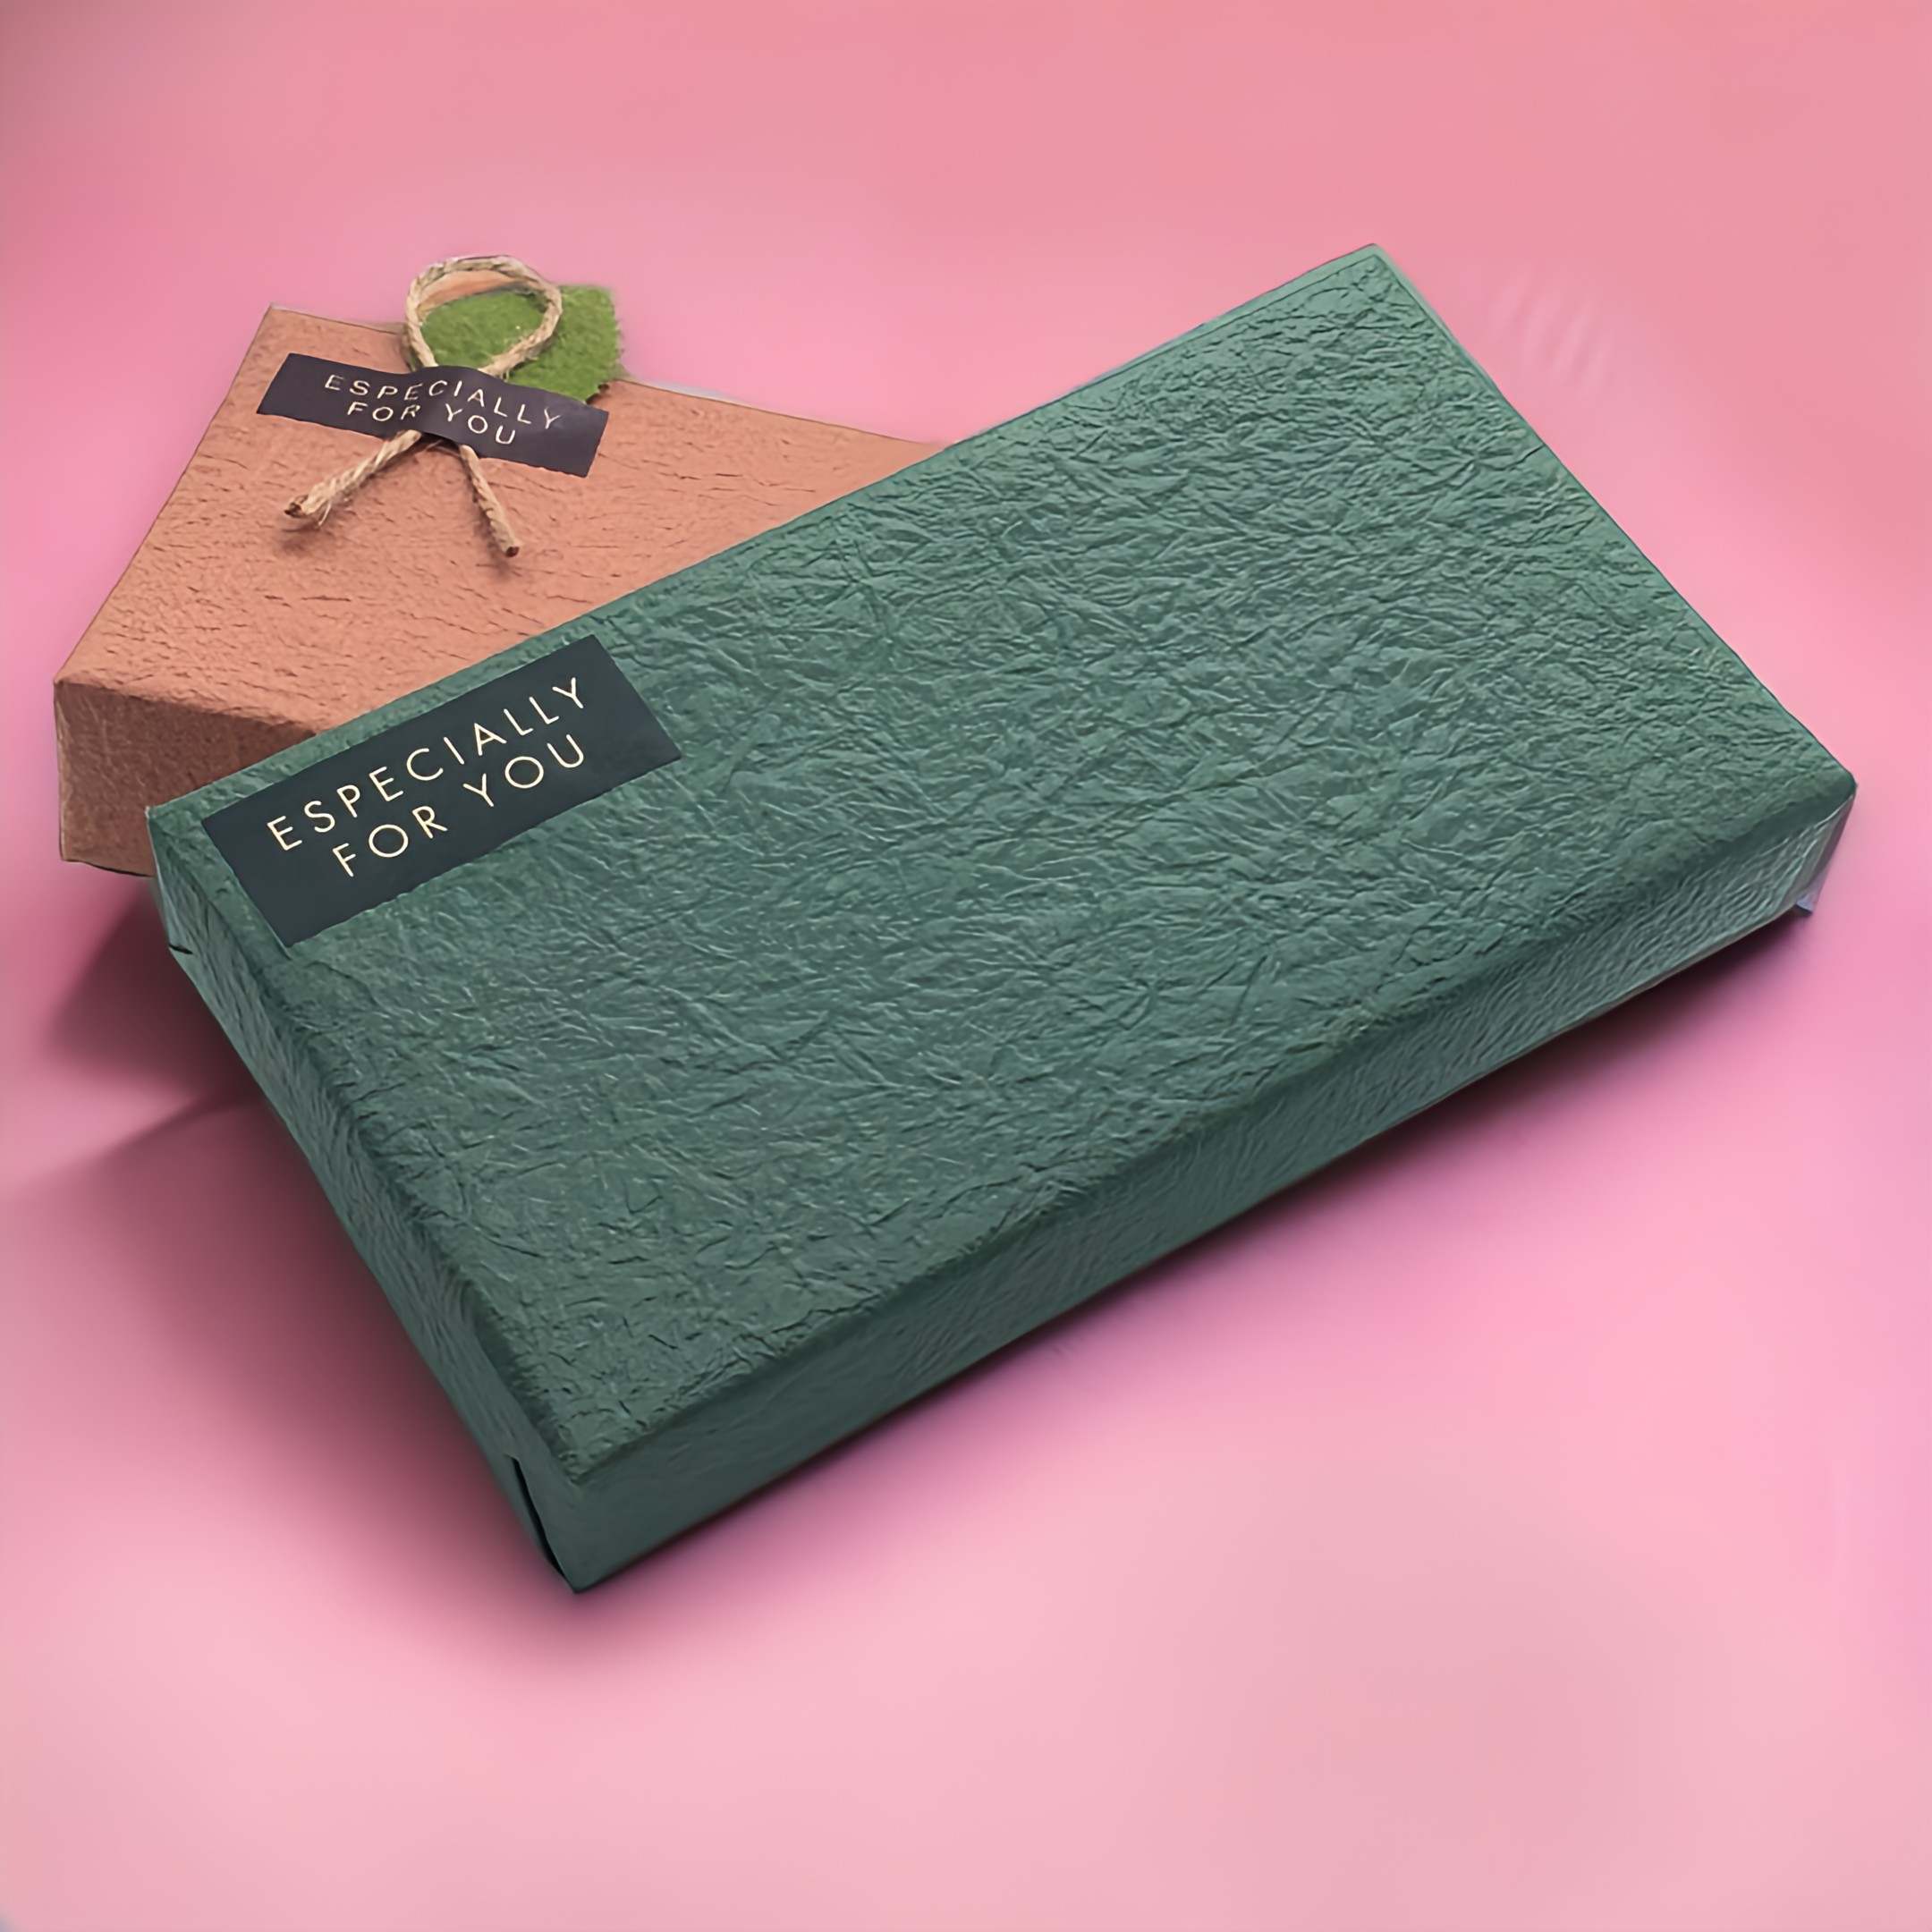 財布をプレゼントするなら、上品な和紙包装で☆彡